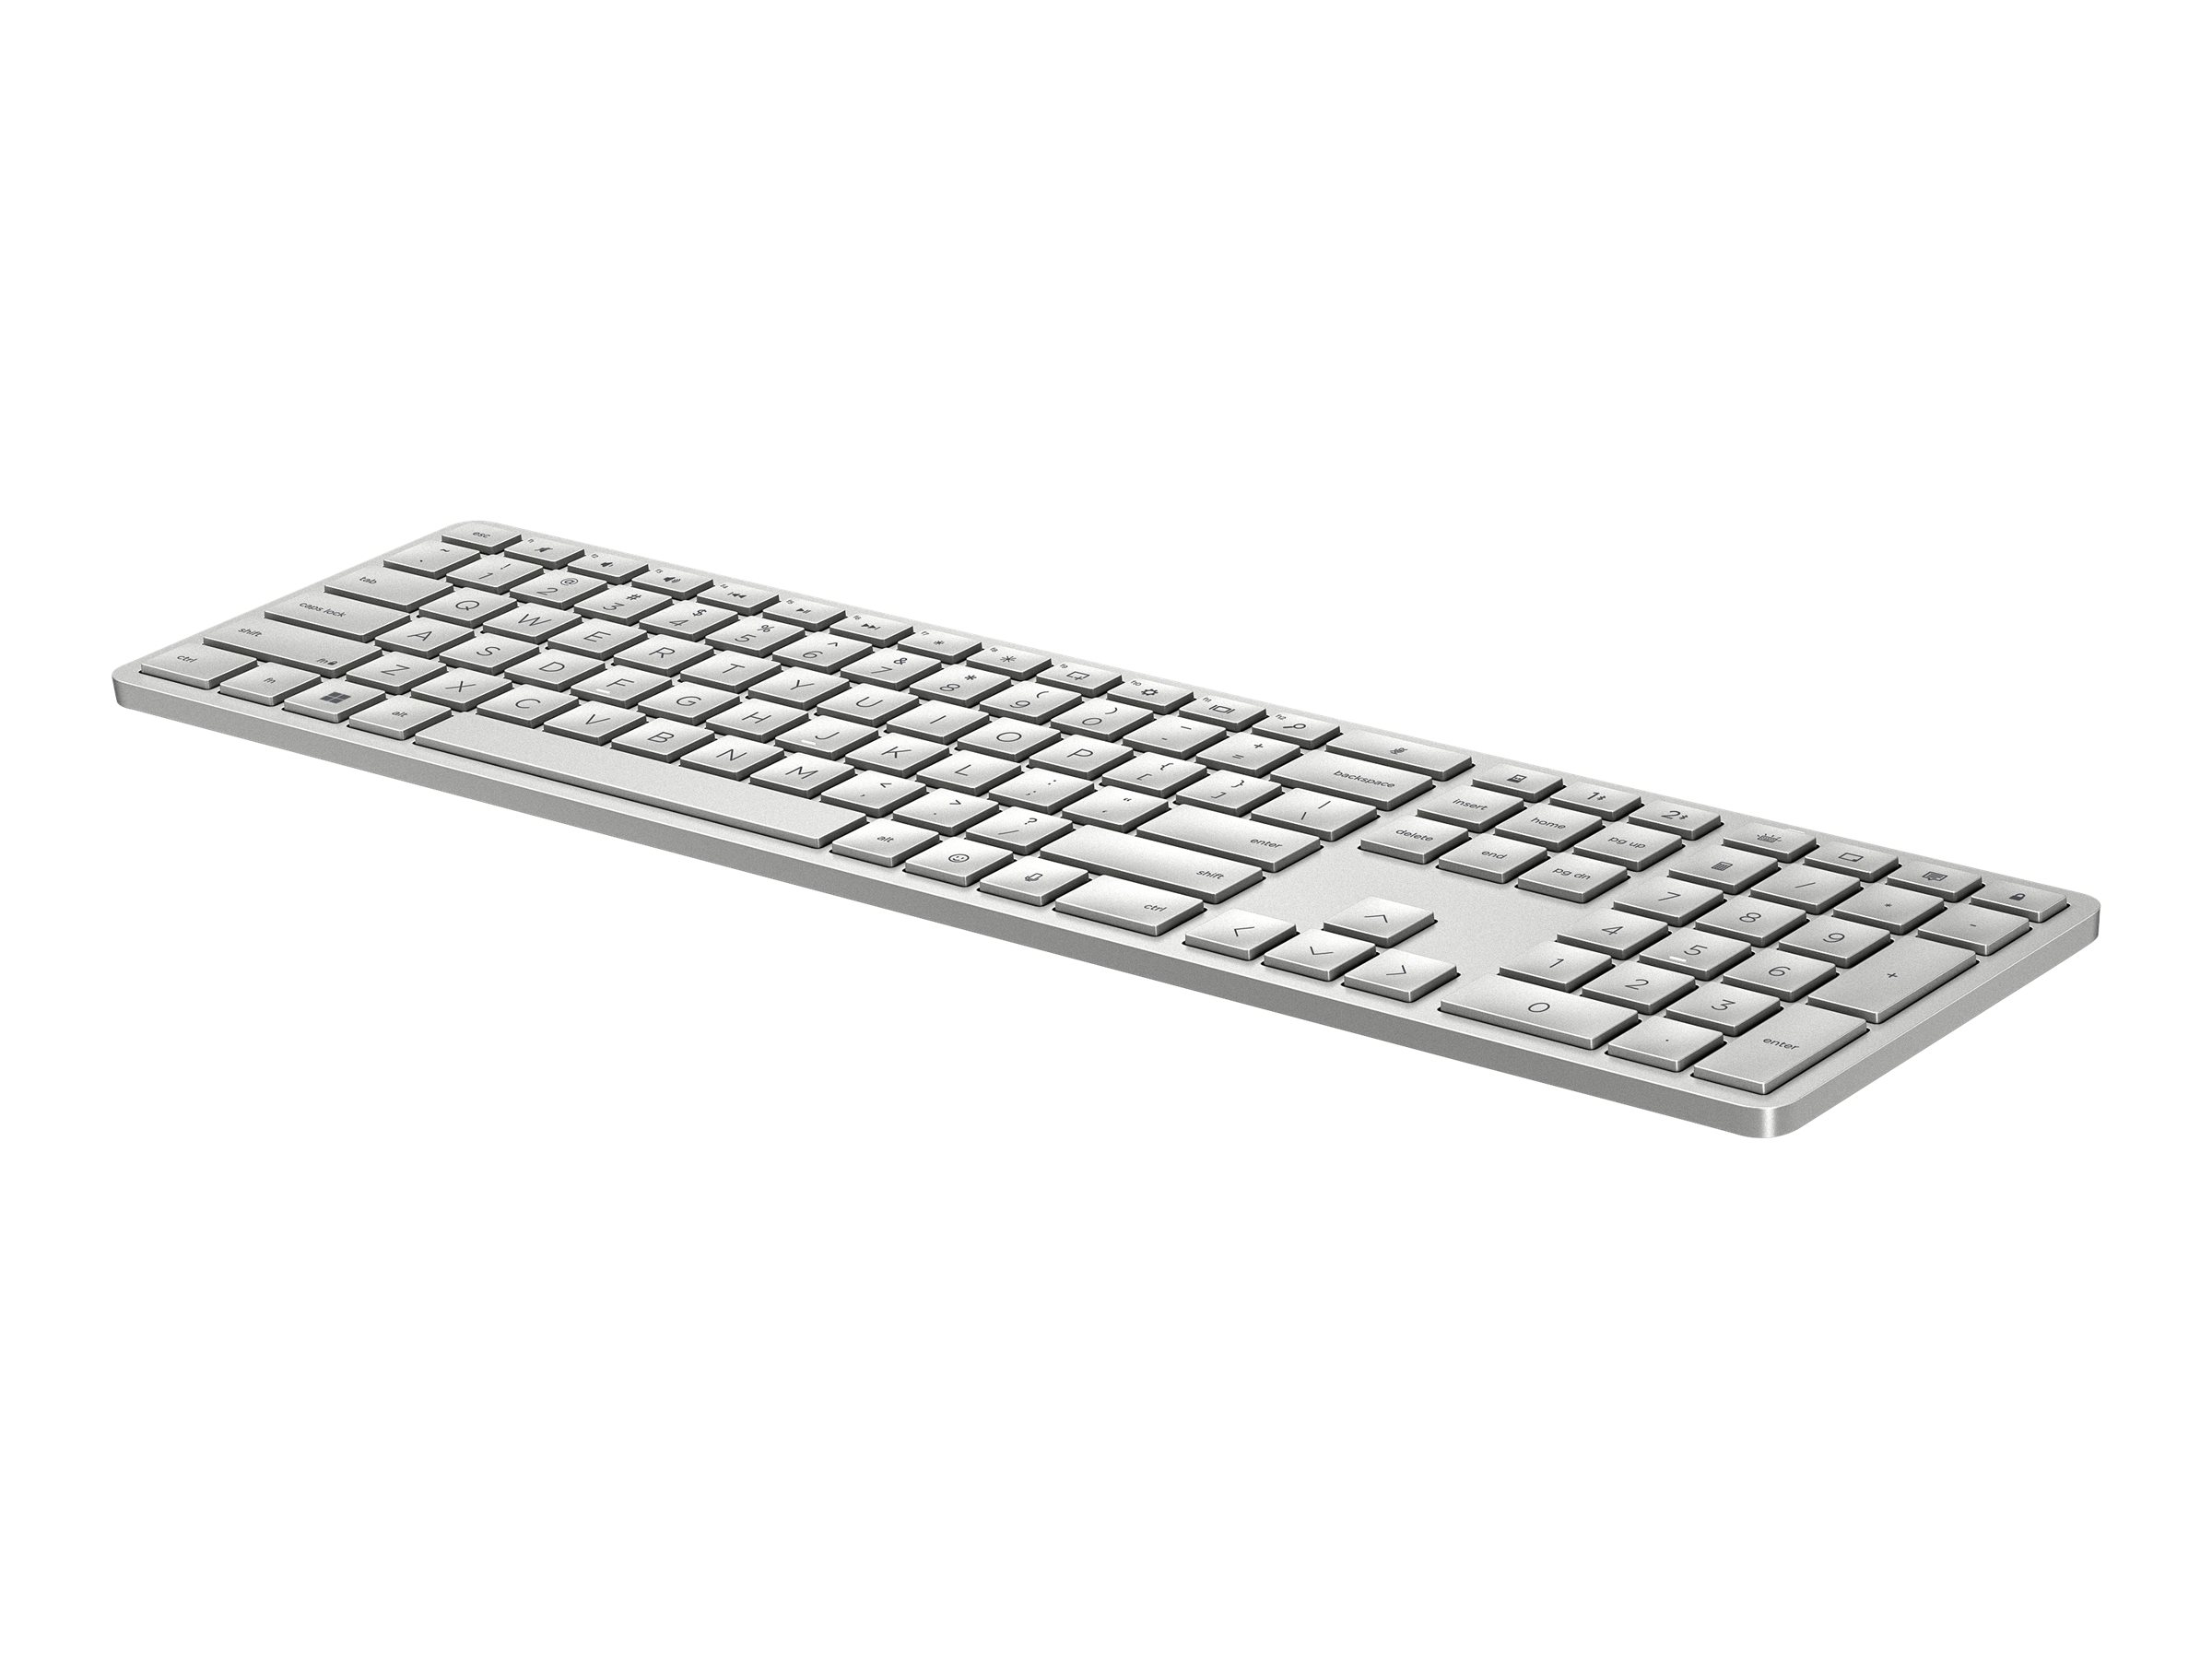 HP 970 Programmable Wireless Keyboard(P) (3Z729AA#ABD)